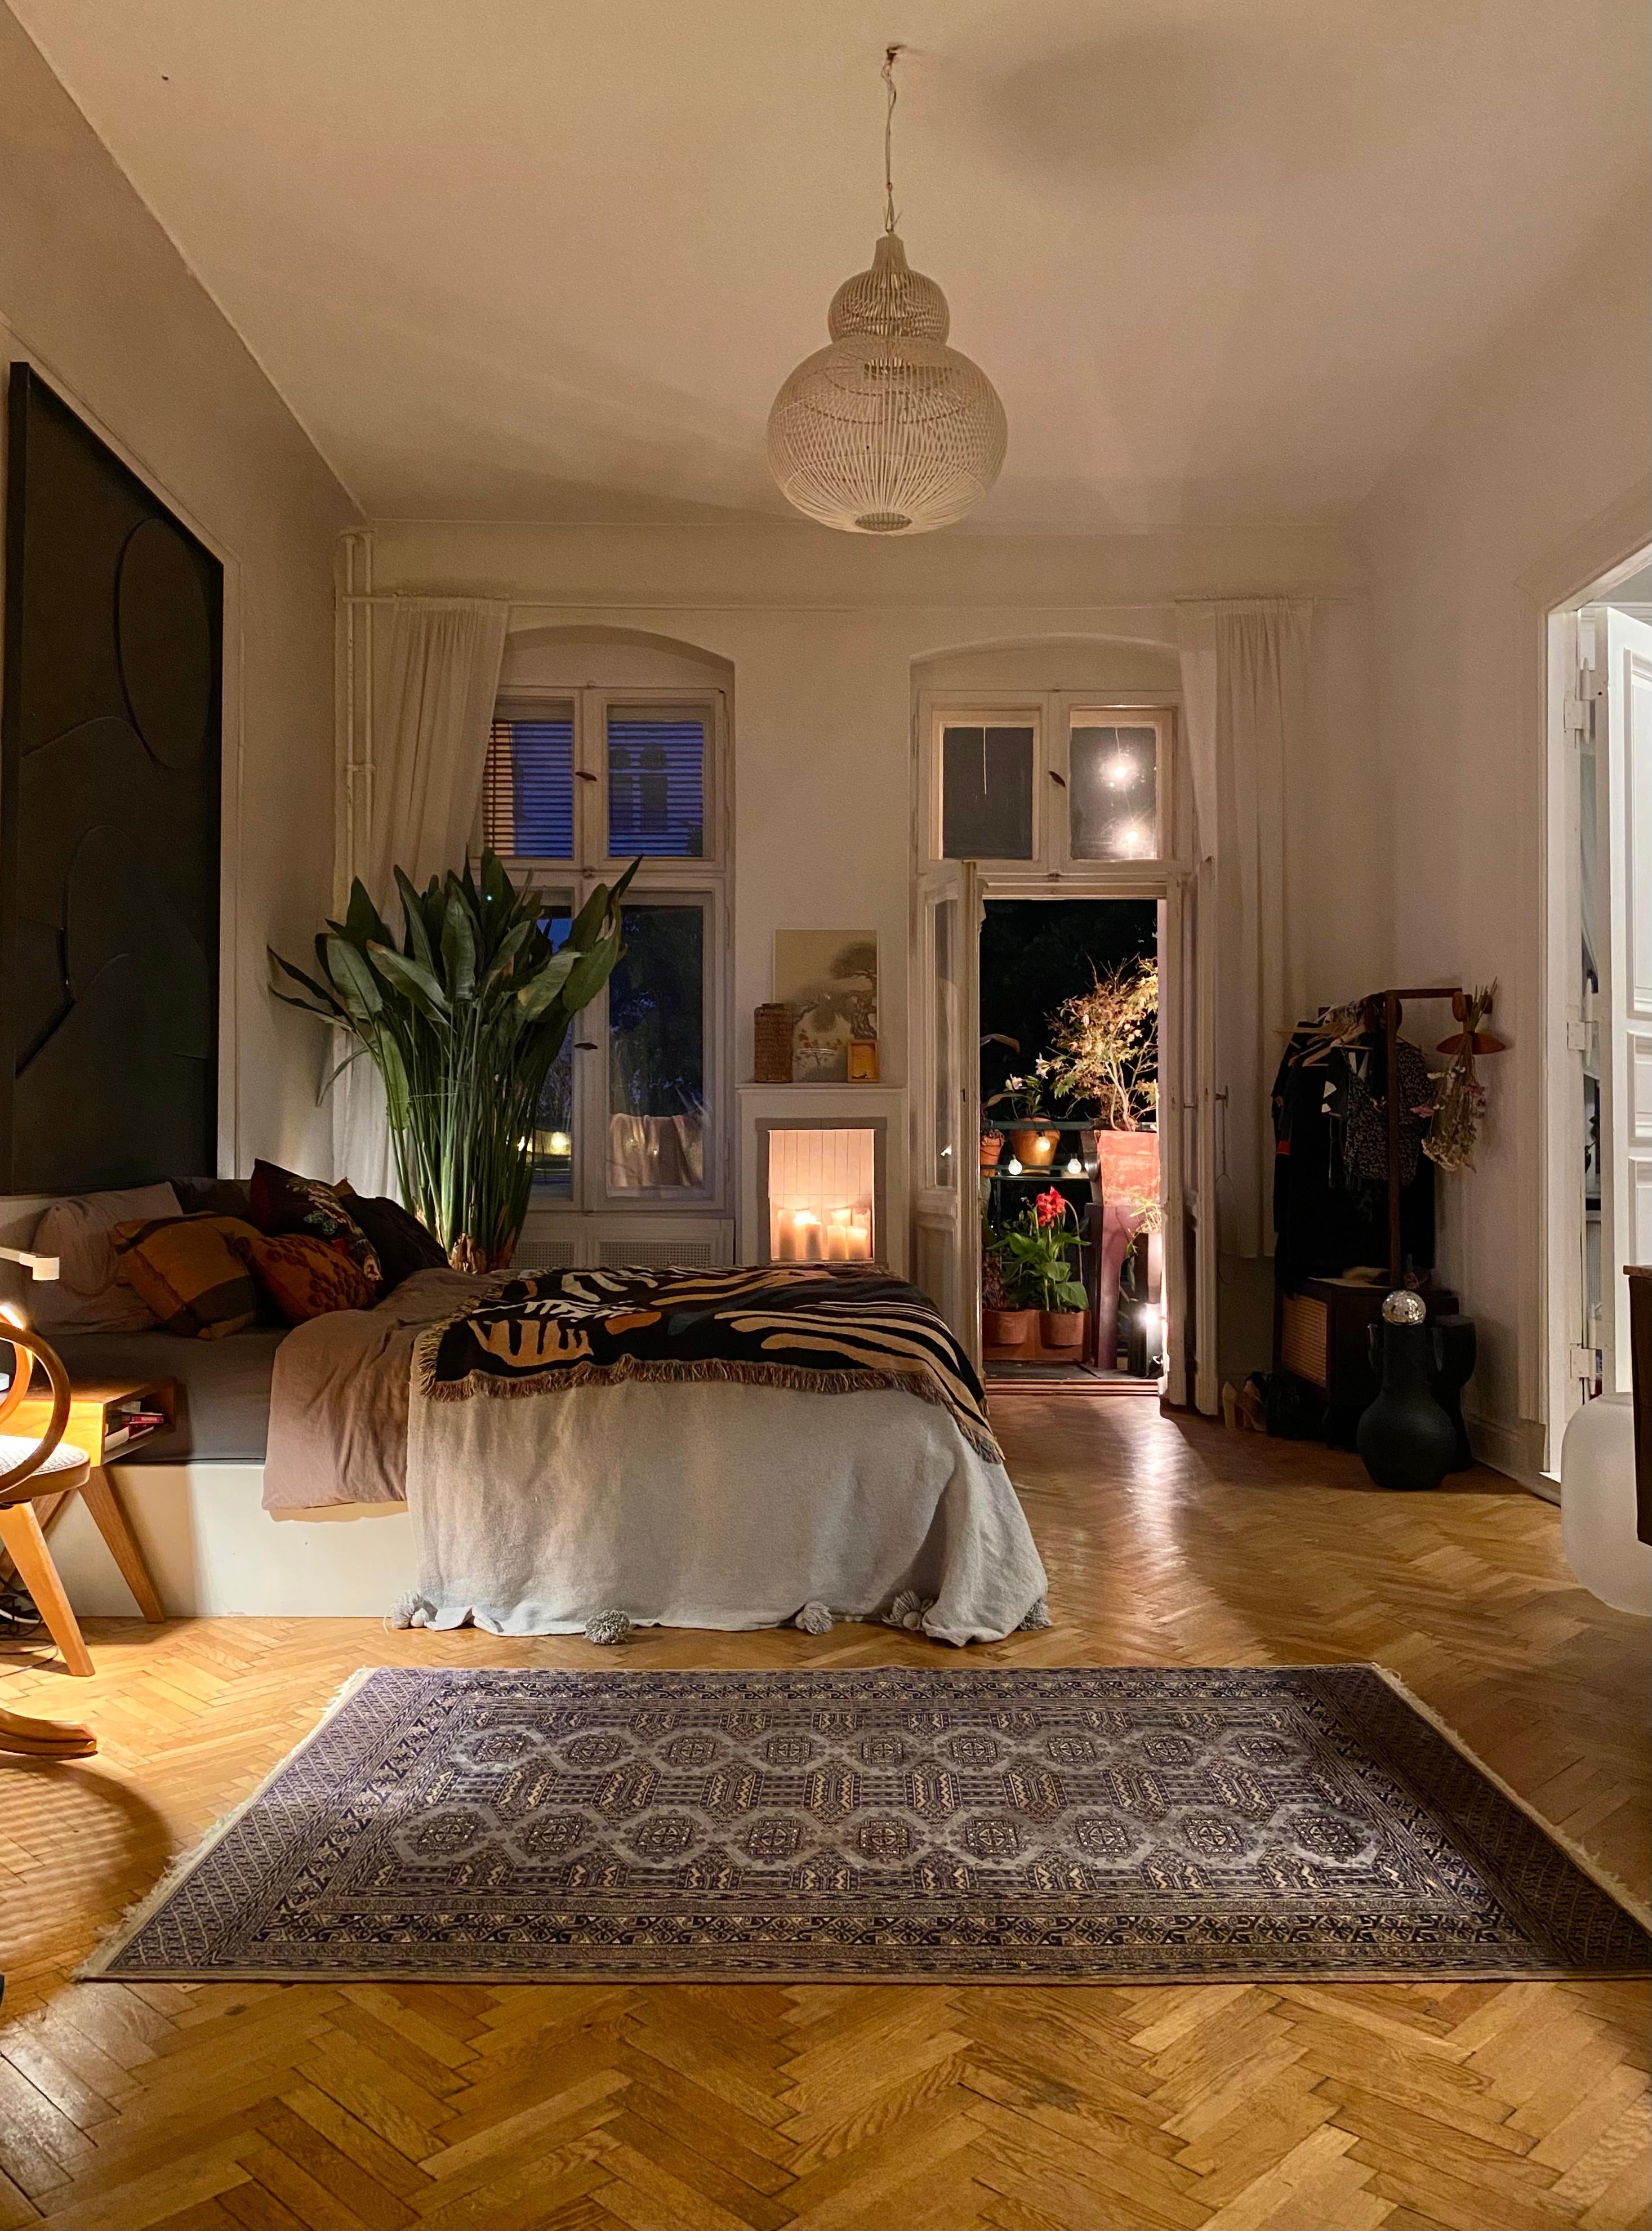 🙌🏽♥️🕯#schlafzimmer #bedroom #altbau #bett #kunst #kamin #teppich #abendstimmung #herbst